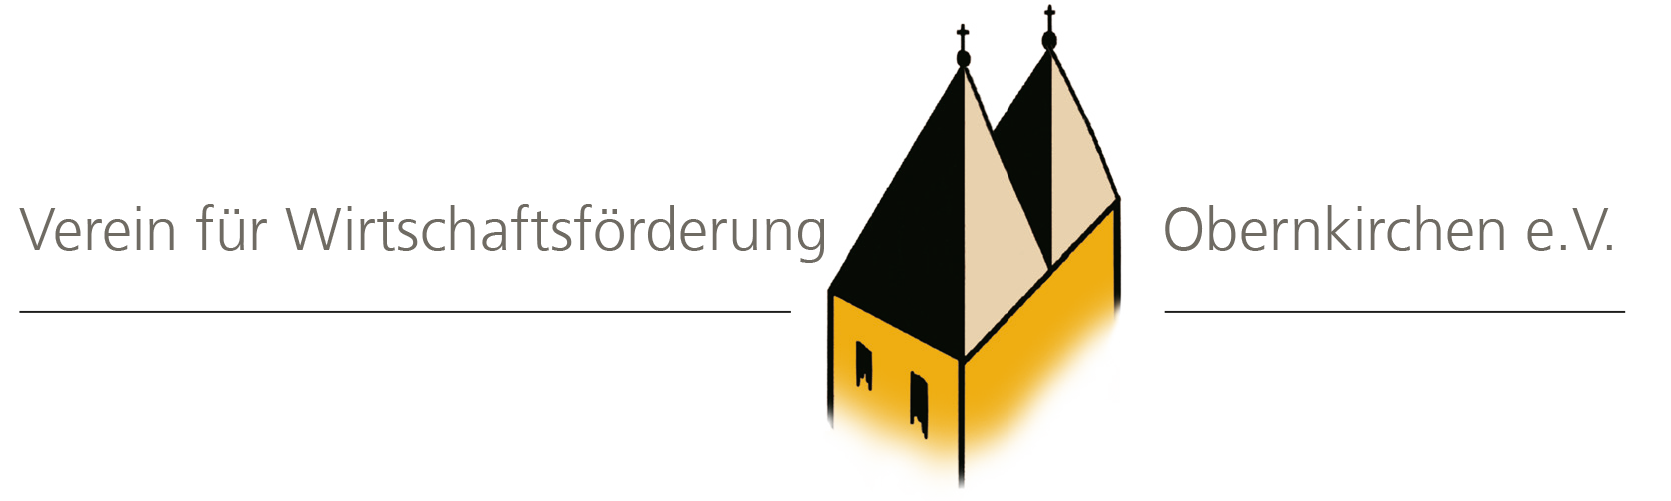 Verein für Wirtschaftsförderung Obernkirchen